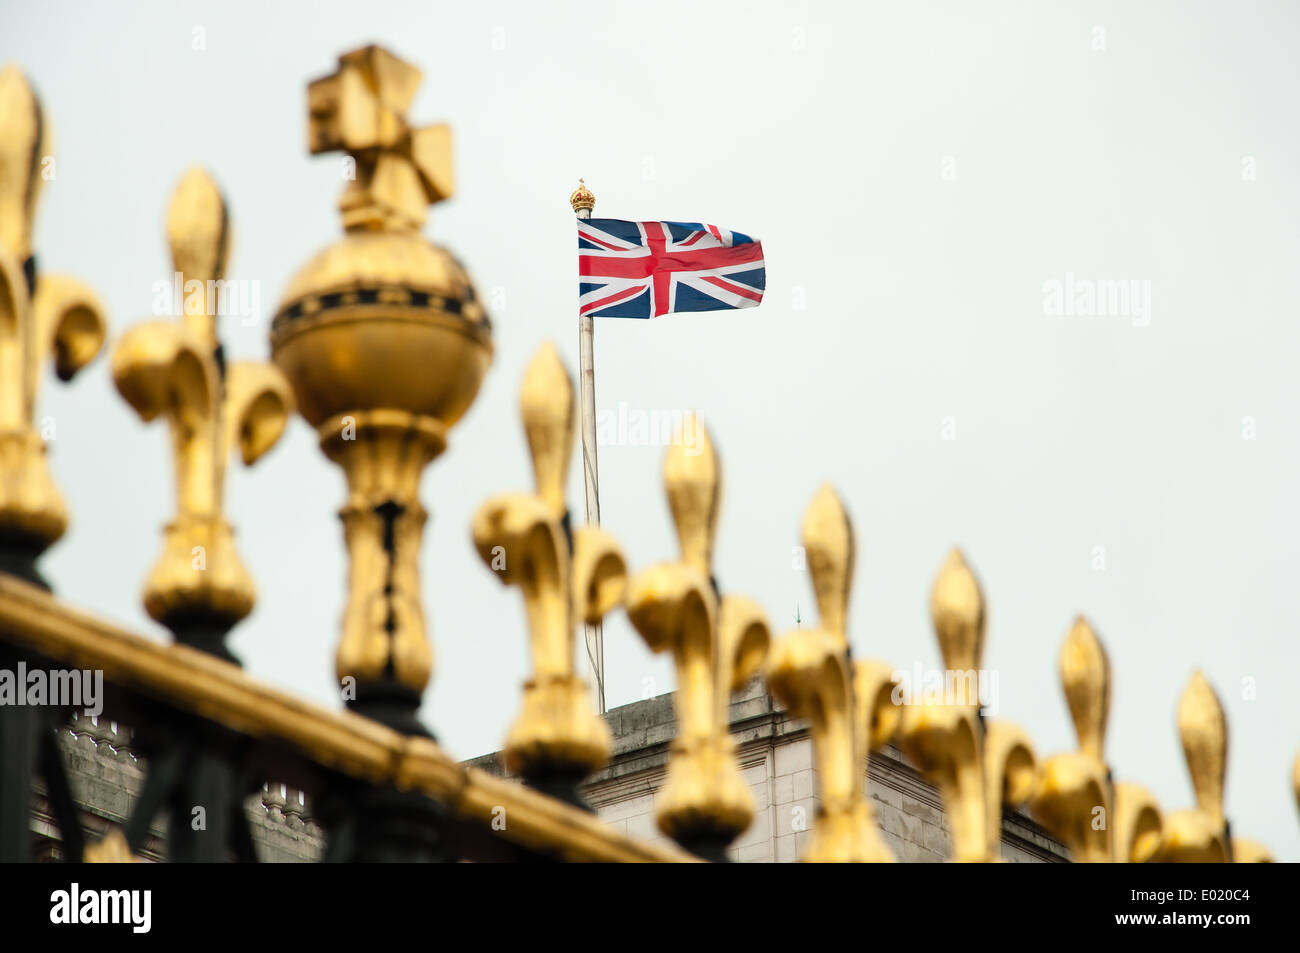 Dettagli del Buckingham palace il recinto con la union jack battenti in background Foto Stock